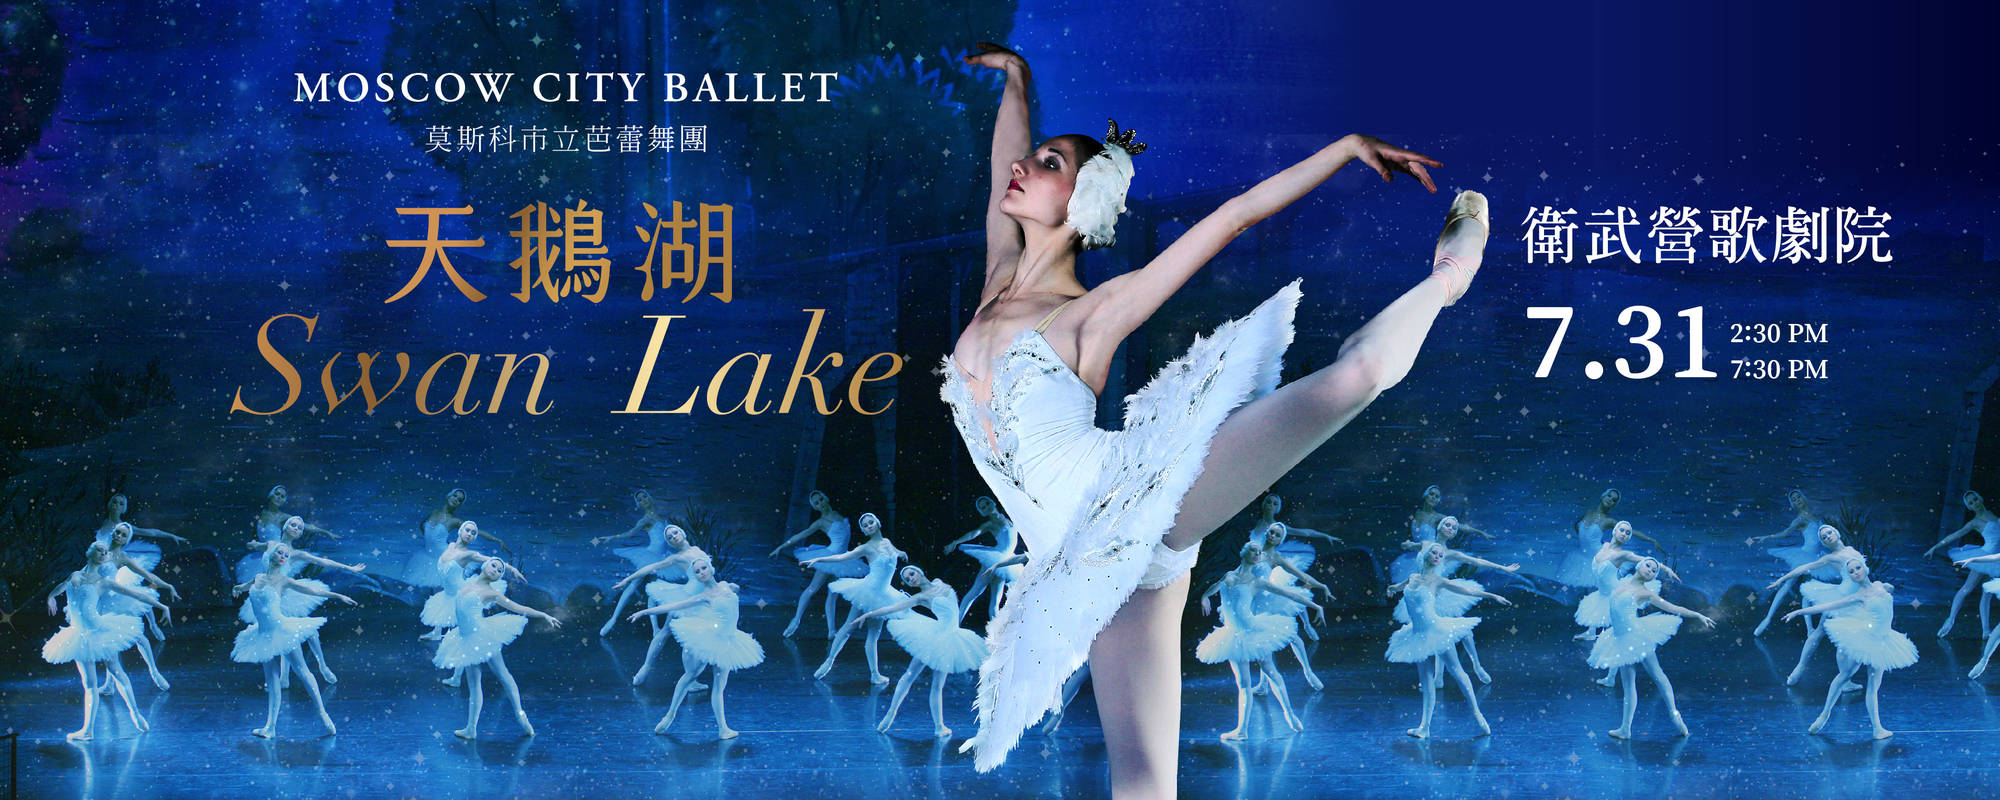 芭蕾舞劇《天鵝湖》-莫斯科市立芭蕾舞團